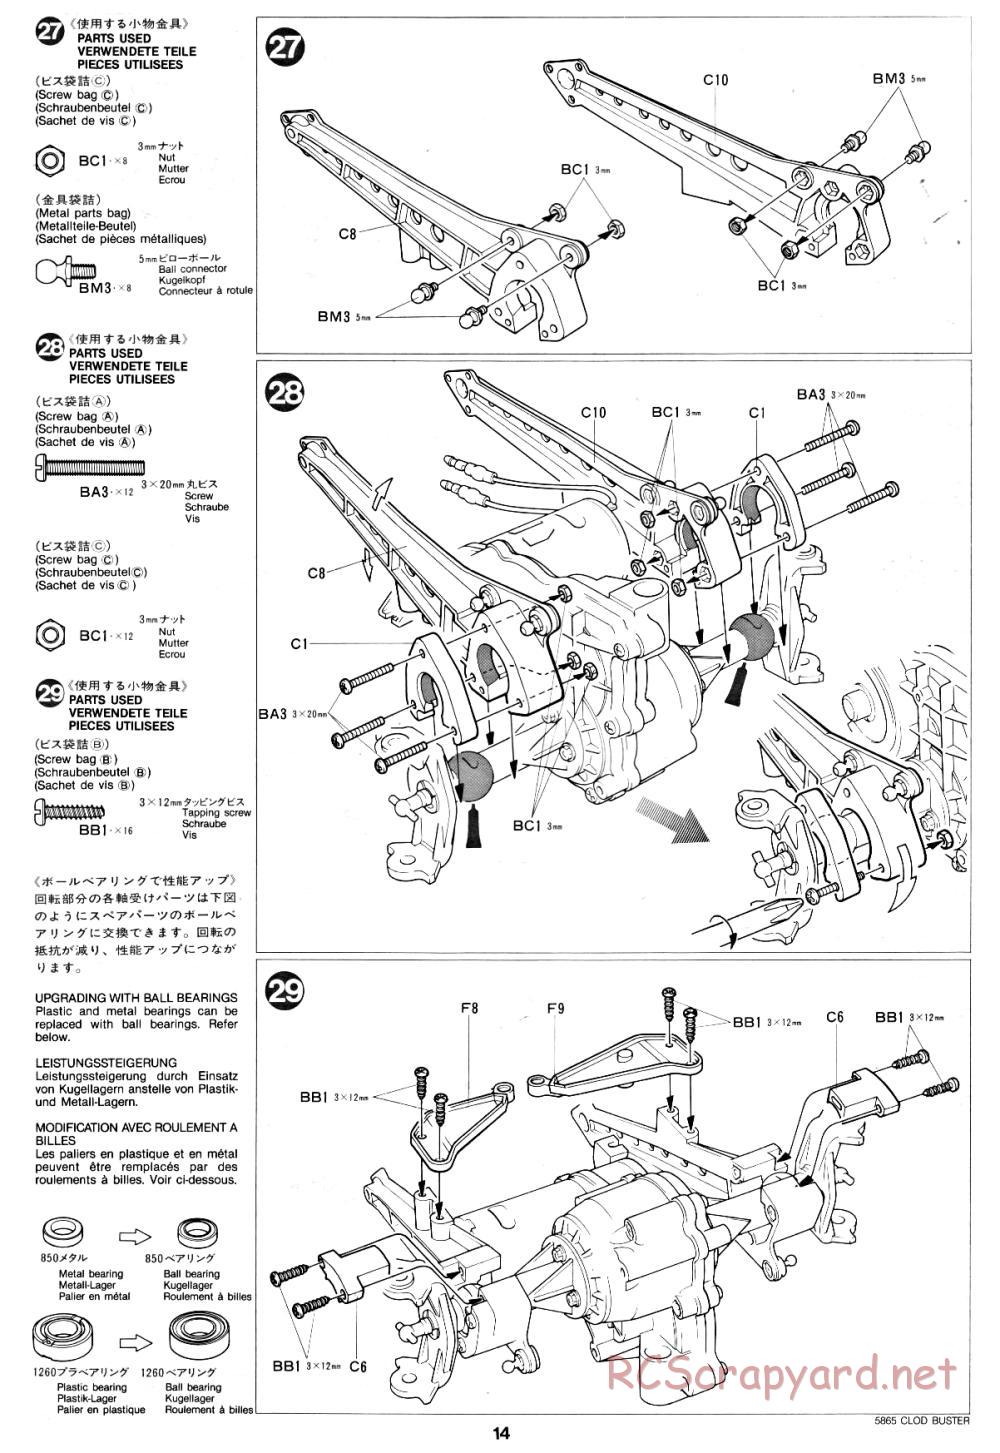 Tamiya - Clod Buster - 58065 - Manual - Page 14